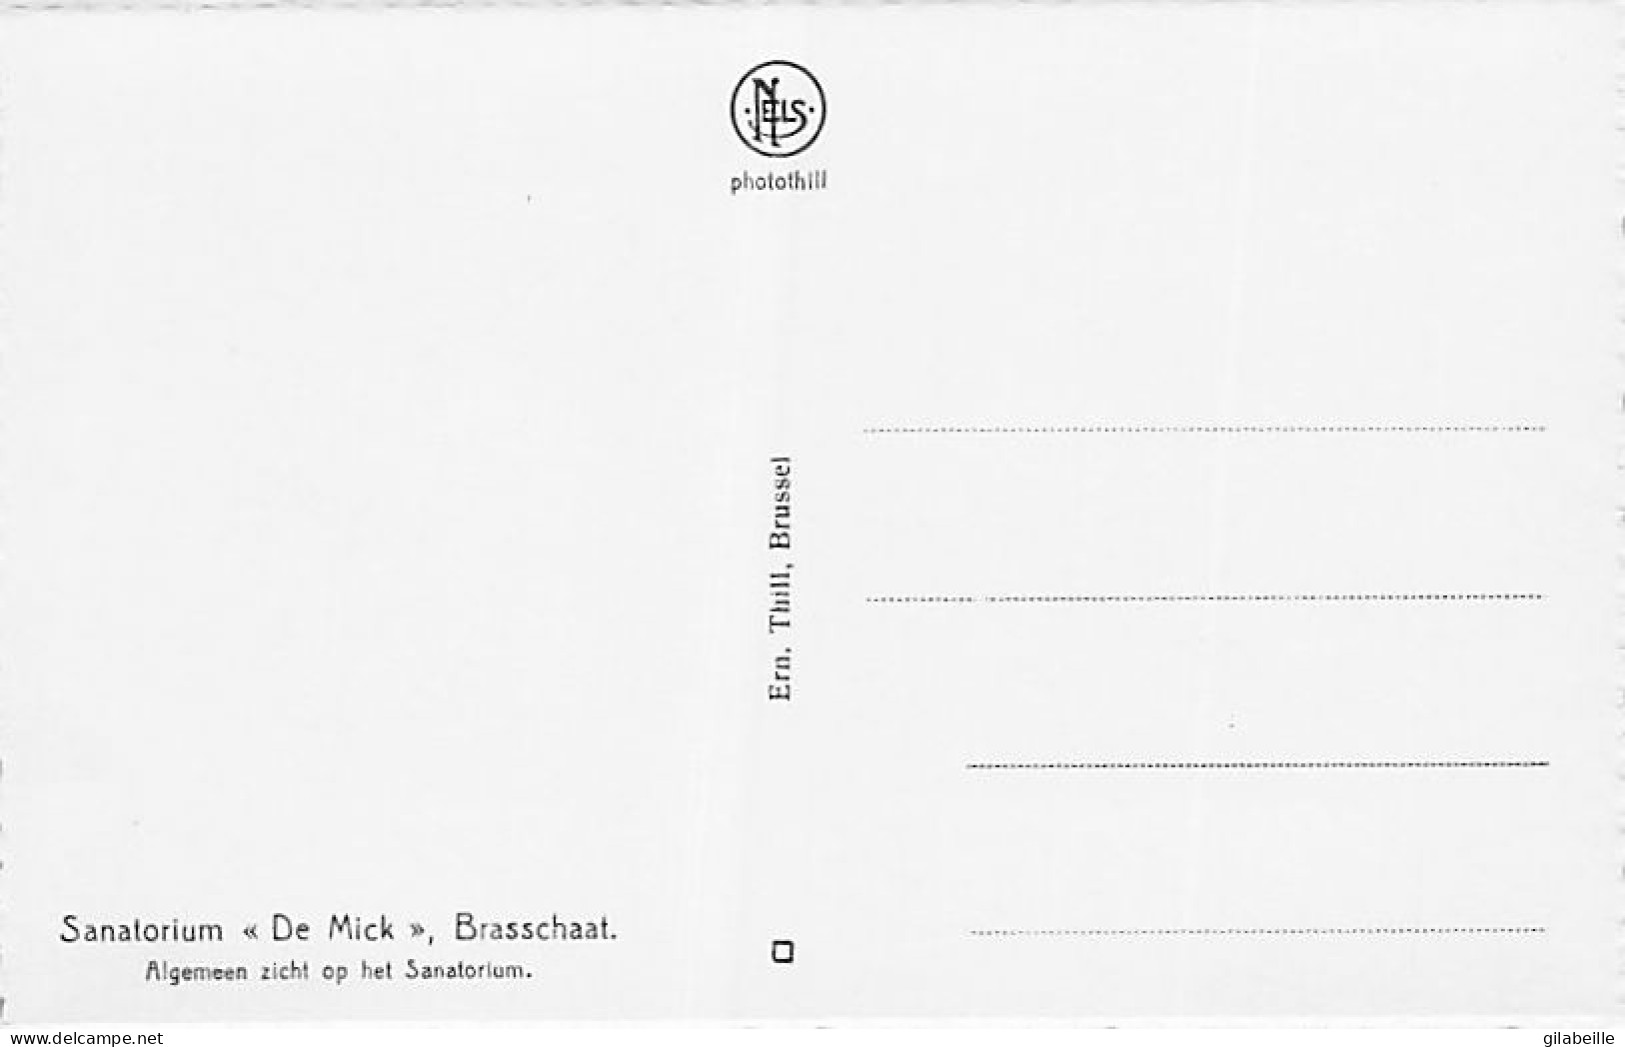 BRASSCHAAT - sanatorium " De Mick " - 10 zichtkaarten - lot 10 cartes